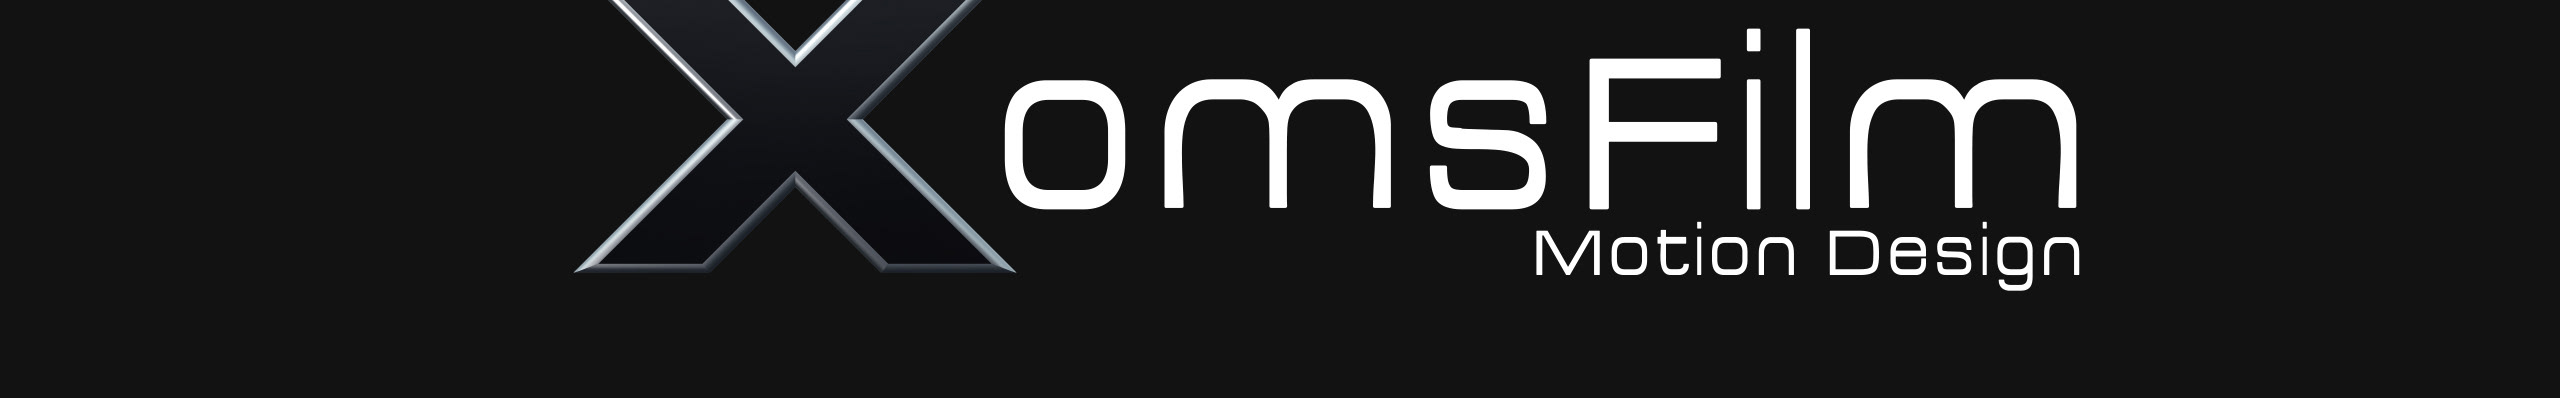 XomsFilm TV profil başlığı